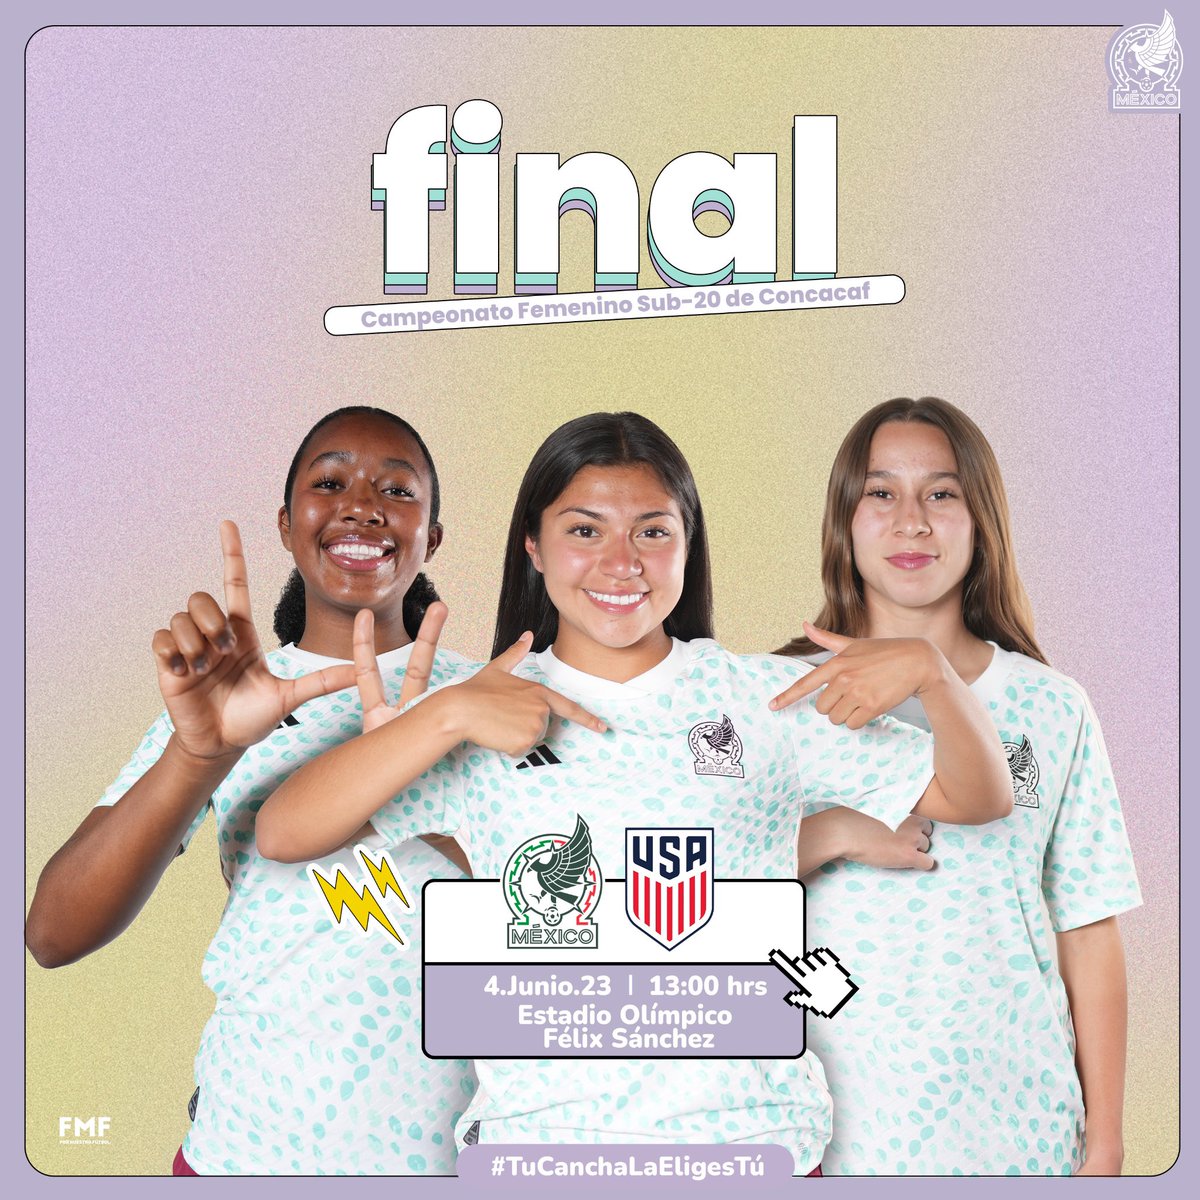 ¡VAMOS! 🩵 🇲🇽
Todos a apoyar a la #Sub20Fem en la Final del Premundial de Concacaf. 

Aquí se deja toda la buena vibra para mañana. 🫶🏻